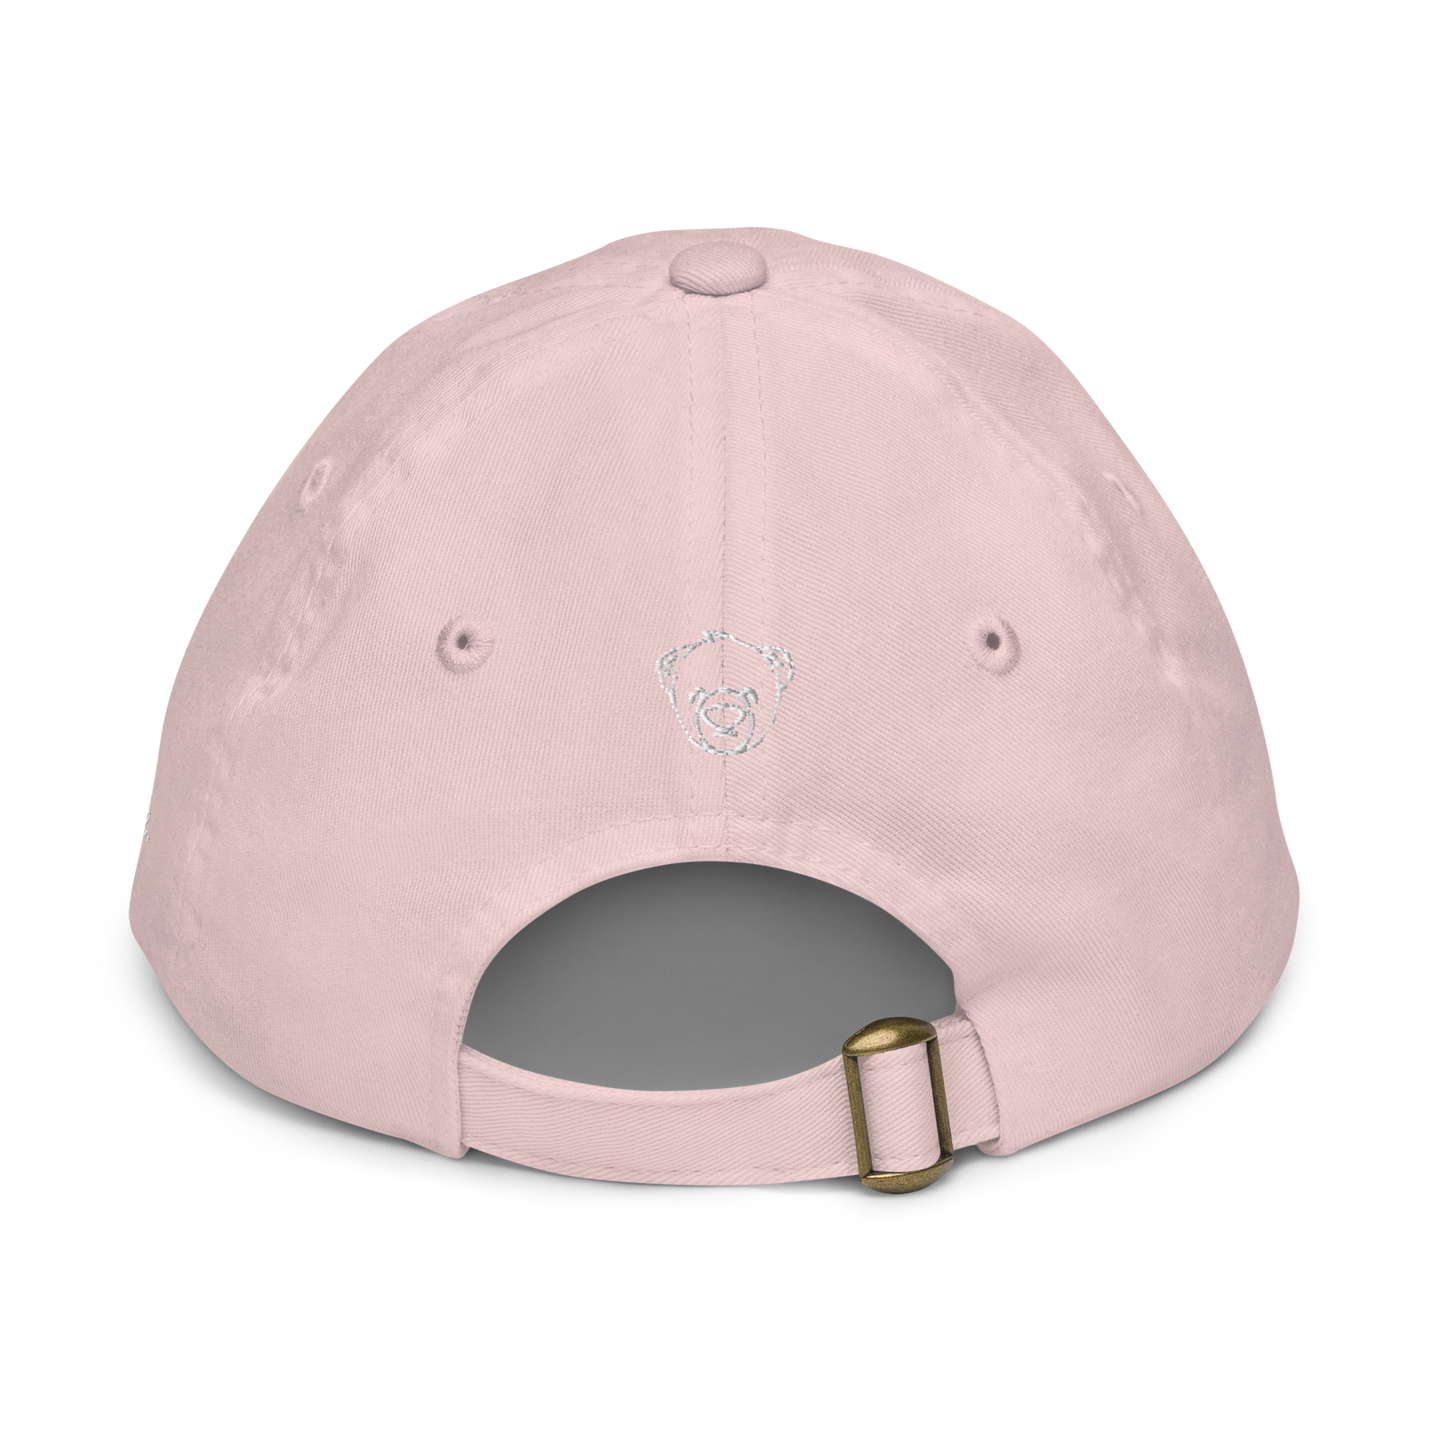 WeBearish Autism Acceptance Hat (Pink)